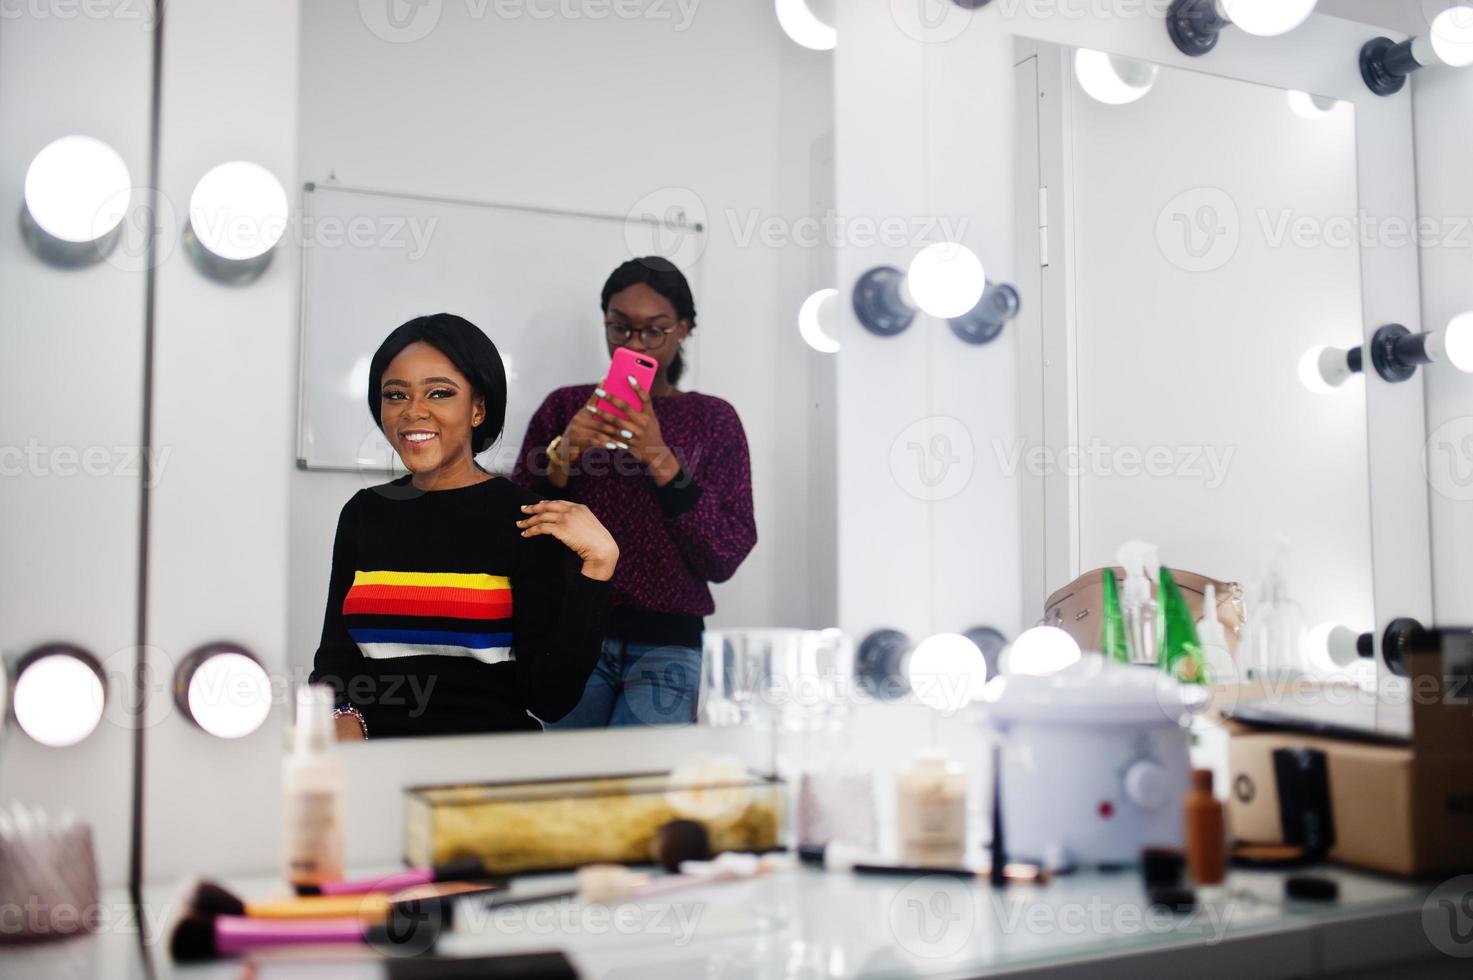 femme afro-américaine se maquillant par une maquilleuse au salon de beauté. l'artiste fait une photo sur son téléphone portable de son travail.